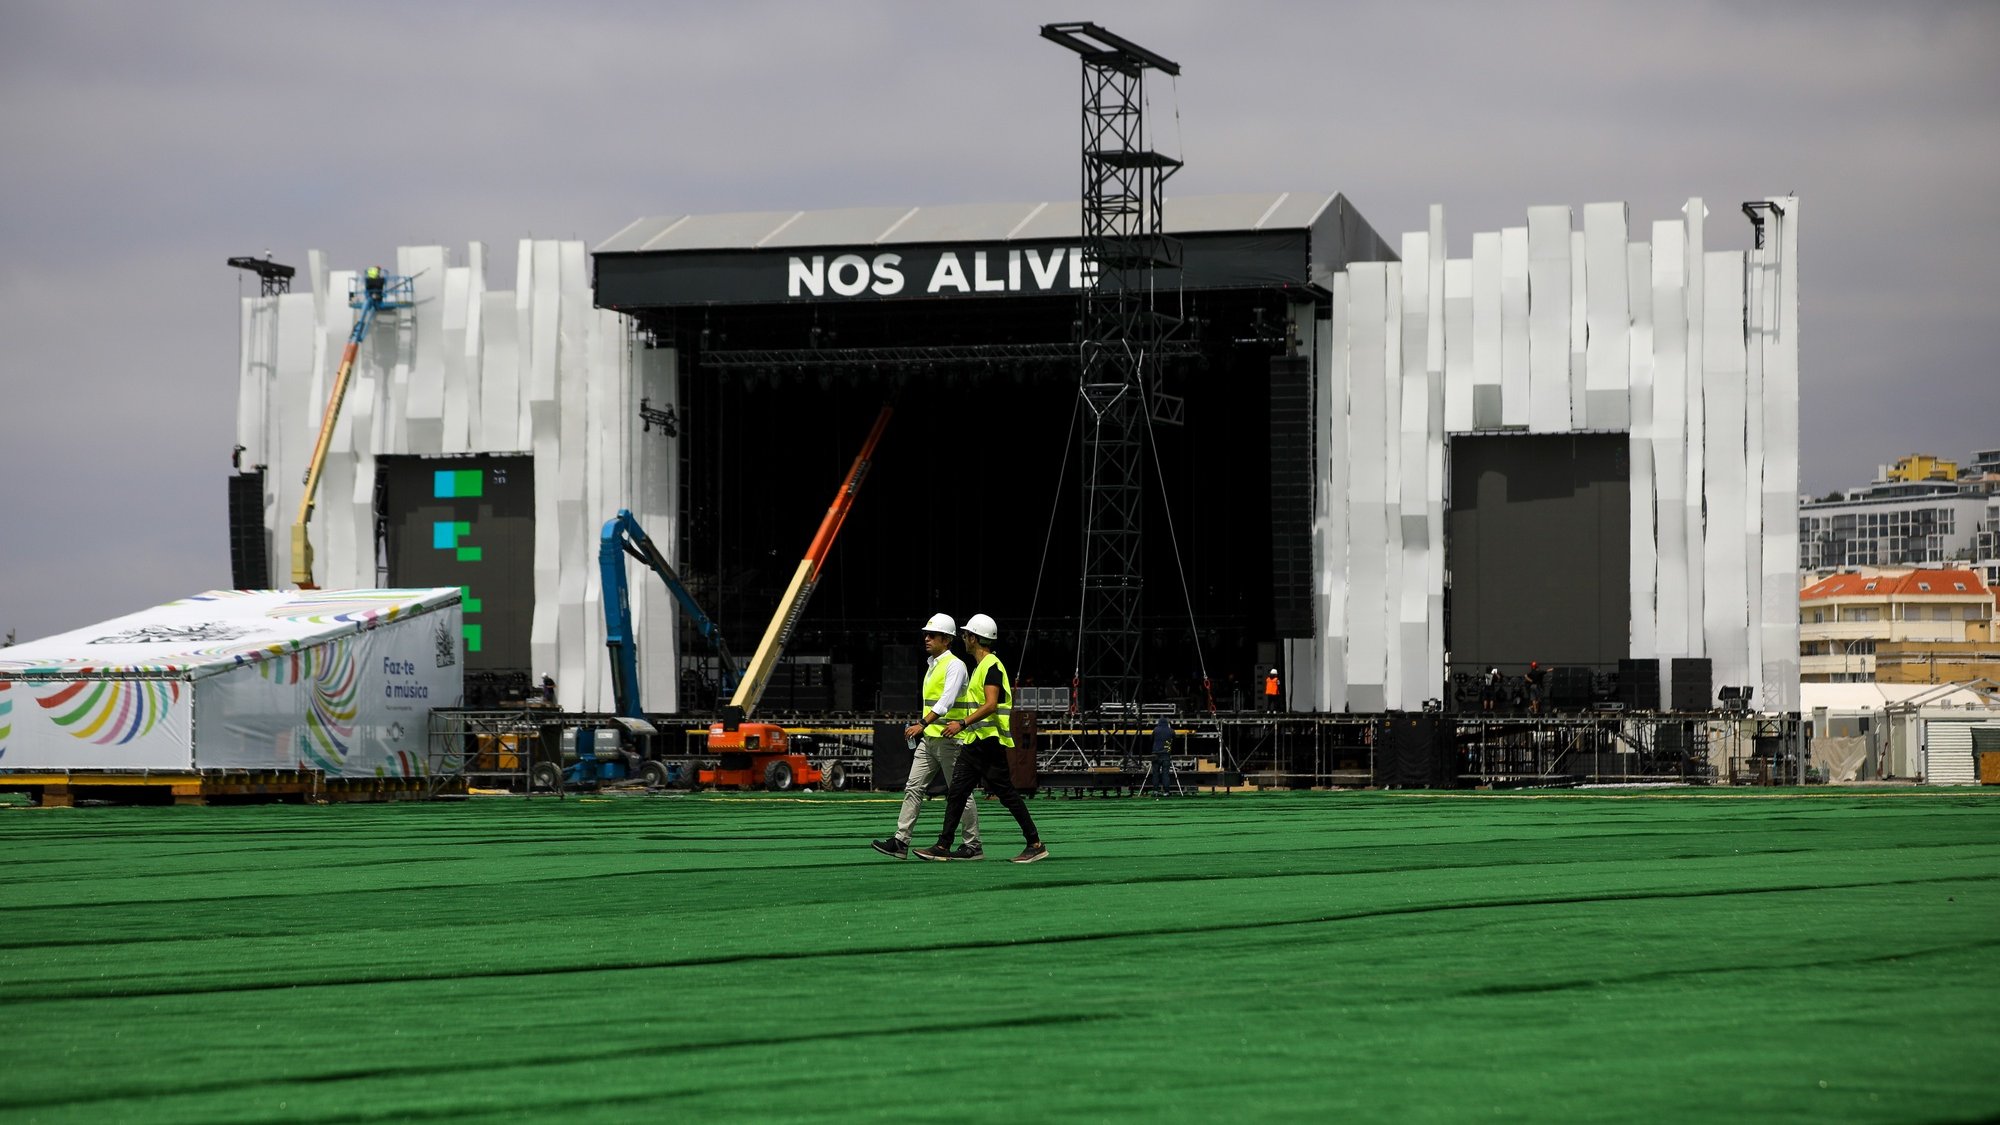 O palco principal do NOS Alive, durante uma visita de imprensa ao recinto do festival Nos Alive, que decorre de 06 a 08 de Julho, no Passeio Marítimo de Algés, 04 de julho de 2022. JOSÉ SENA GOULÃO/LUSA